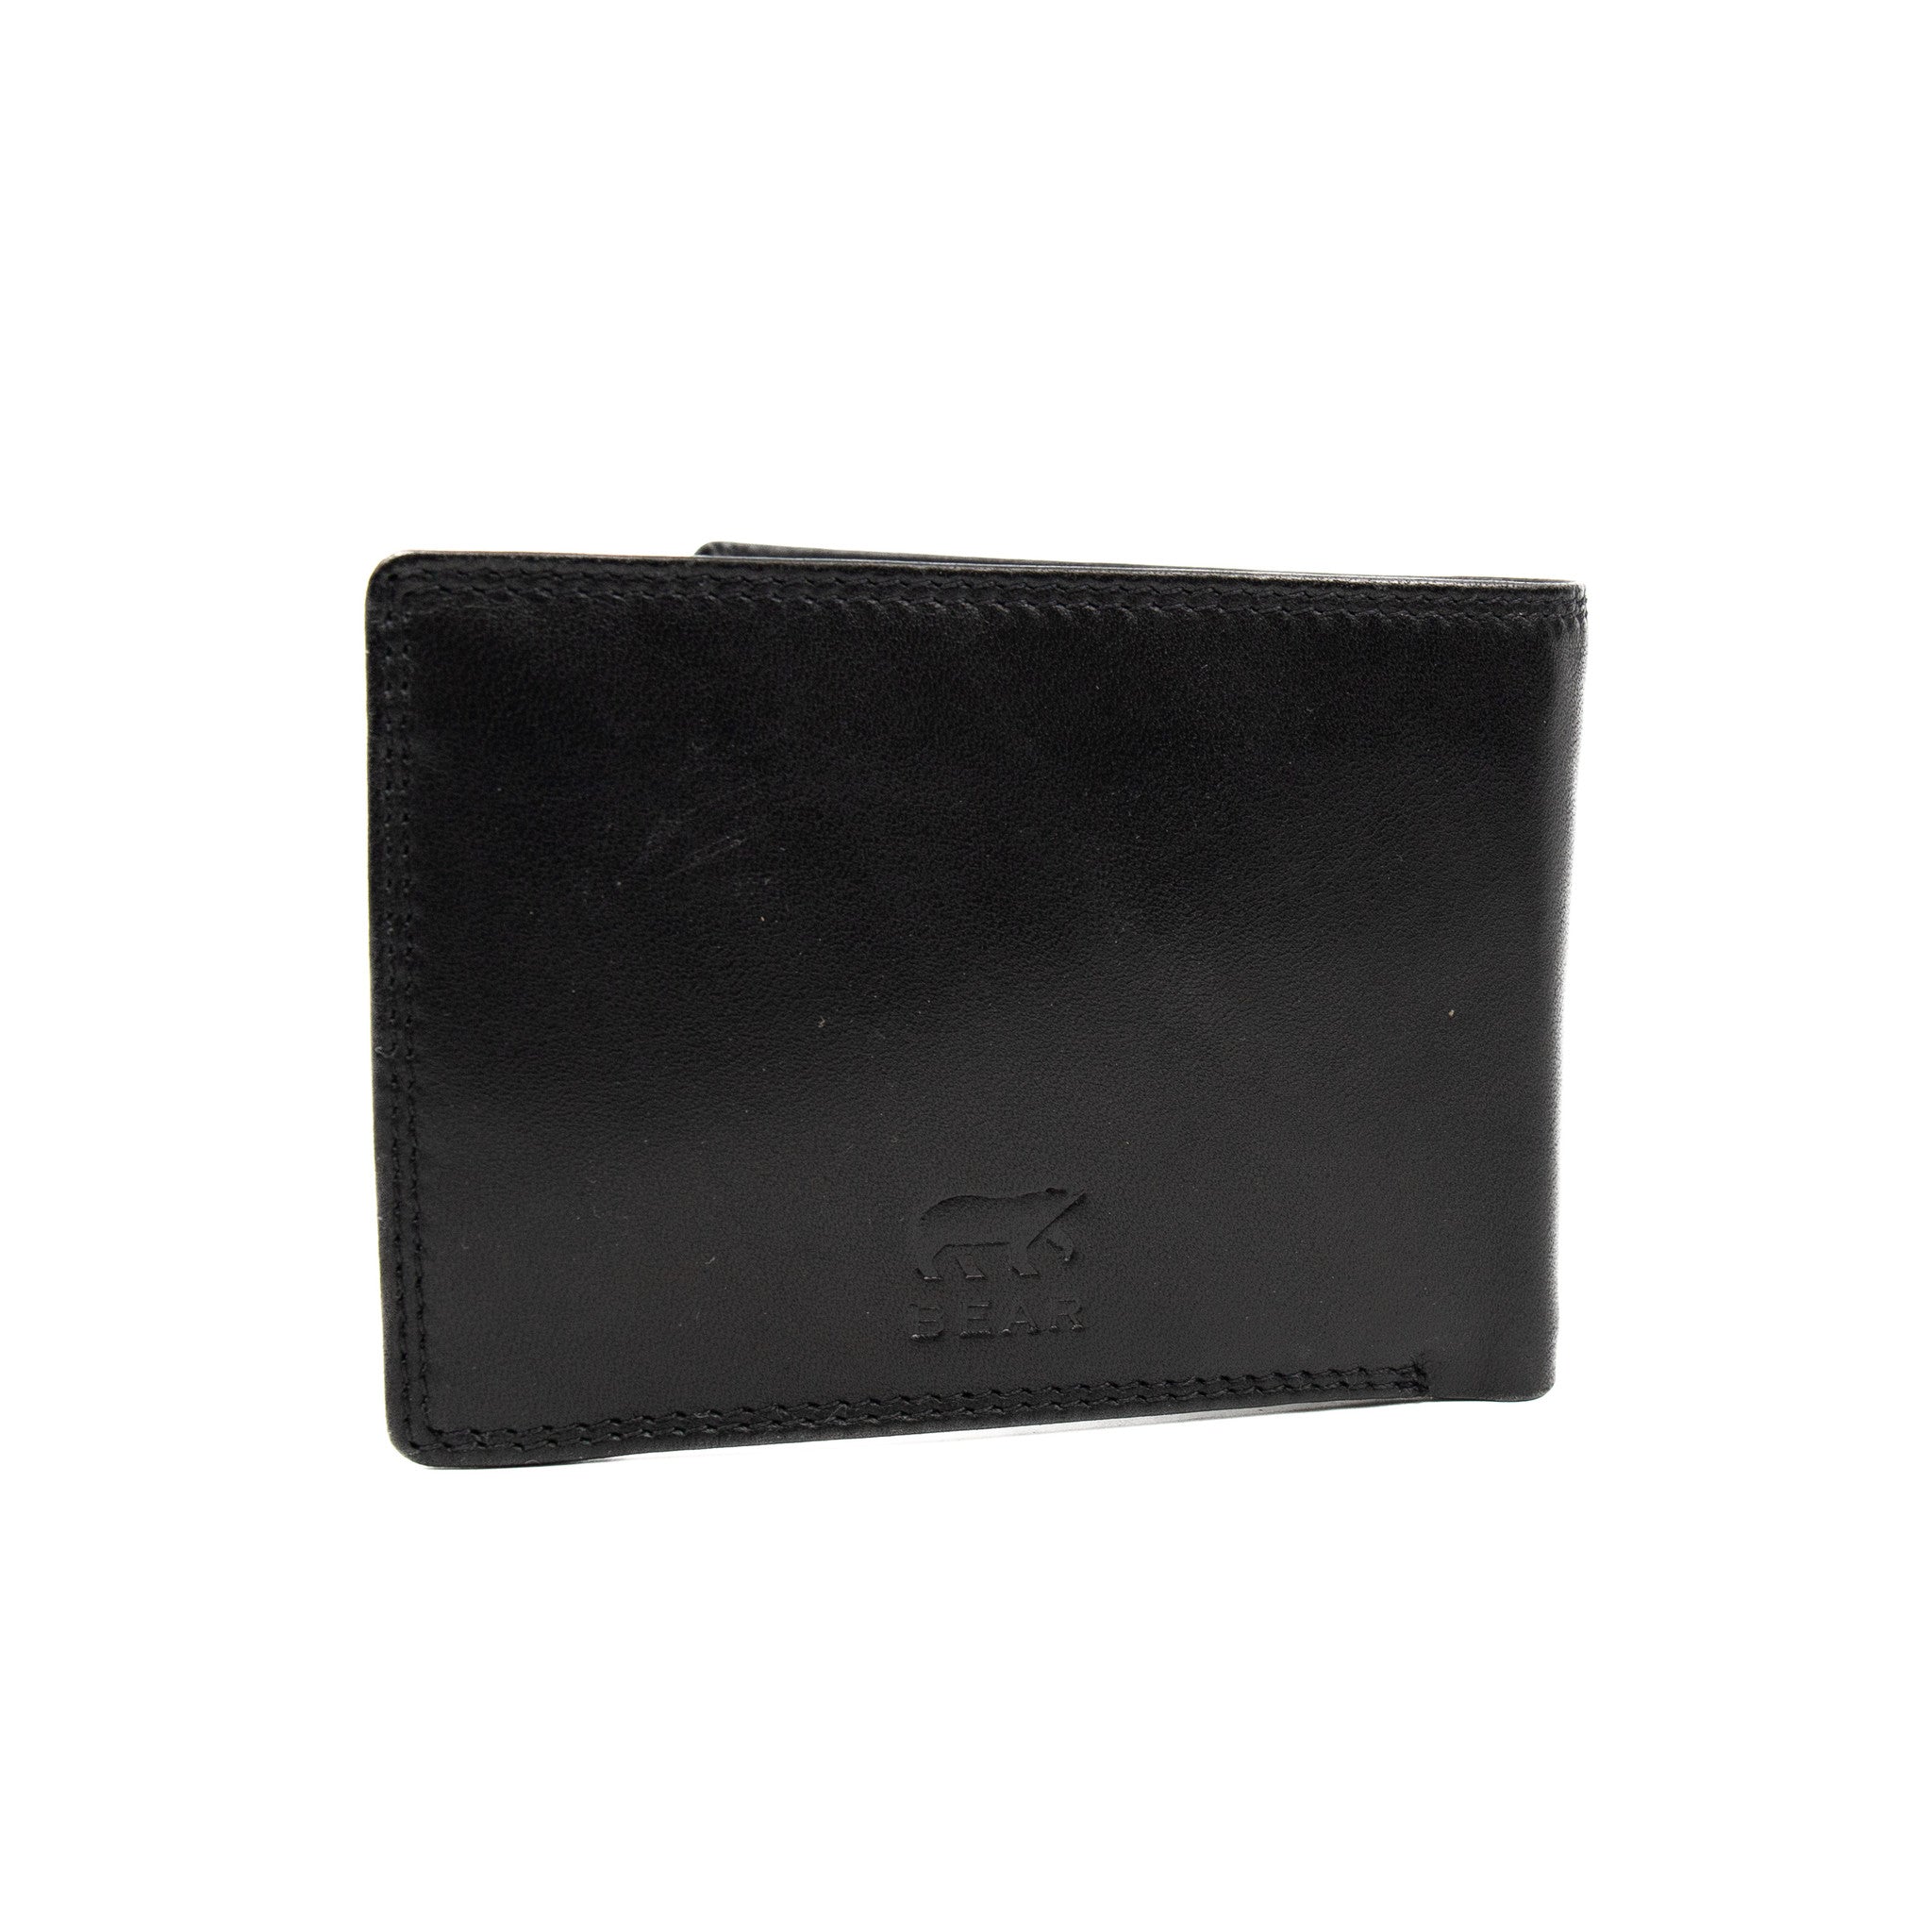 Brieftasche 'Joep' schwarz - M 7208